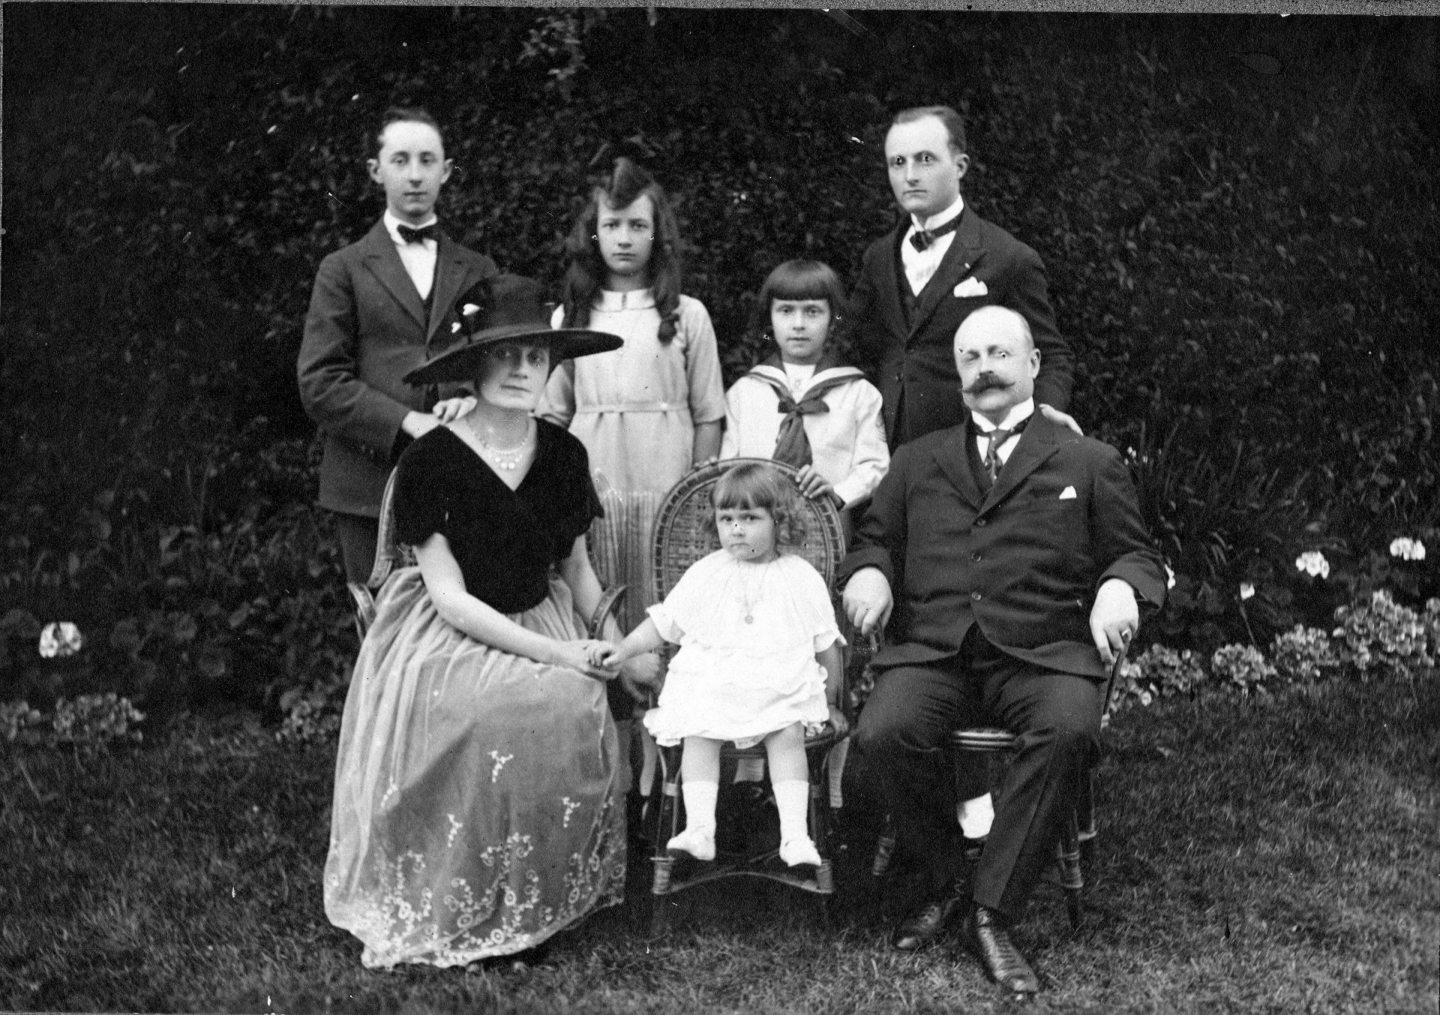 The Dior family in their garden, c. 1920